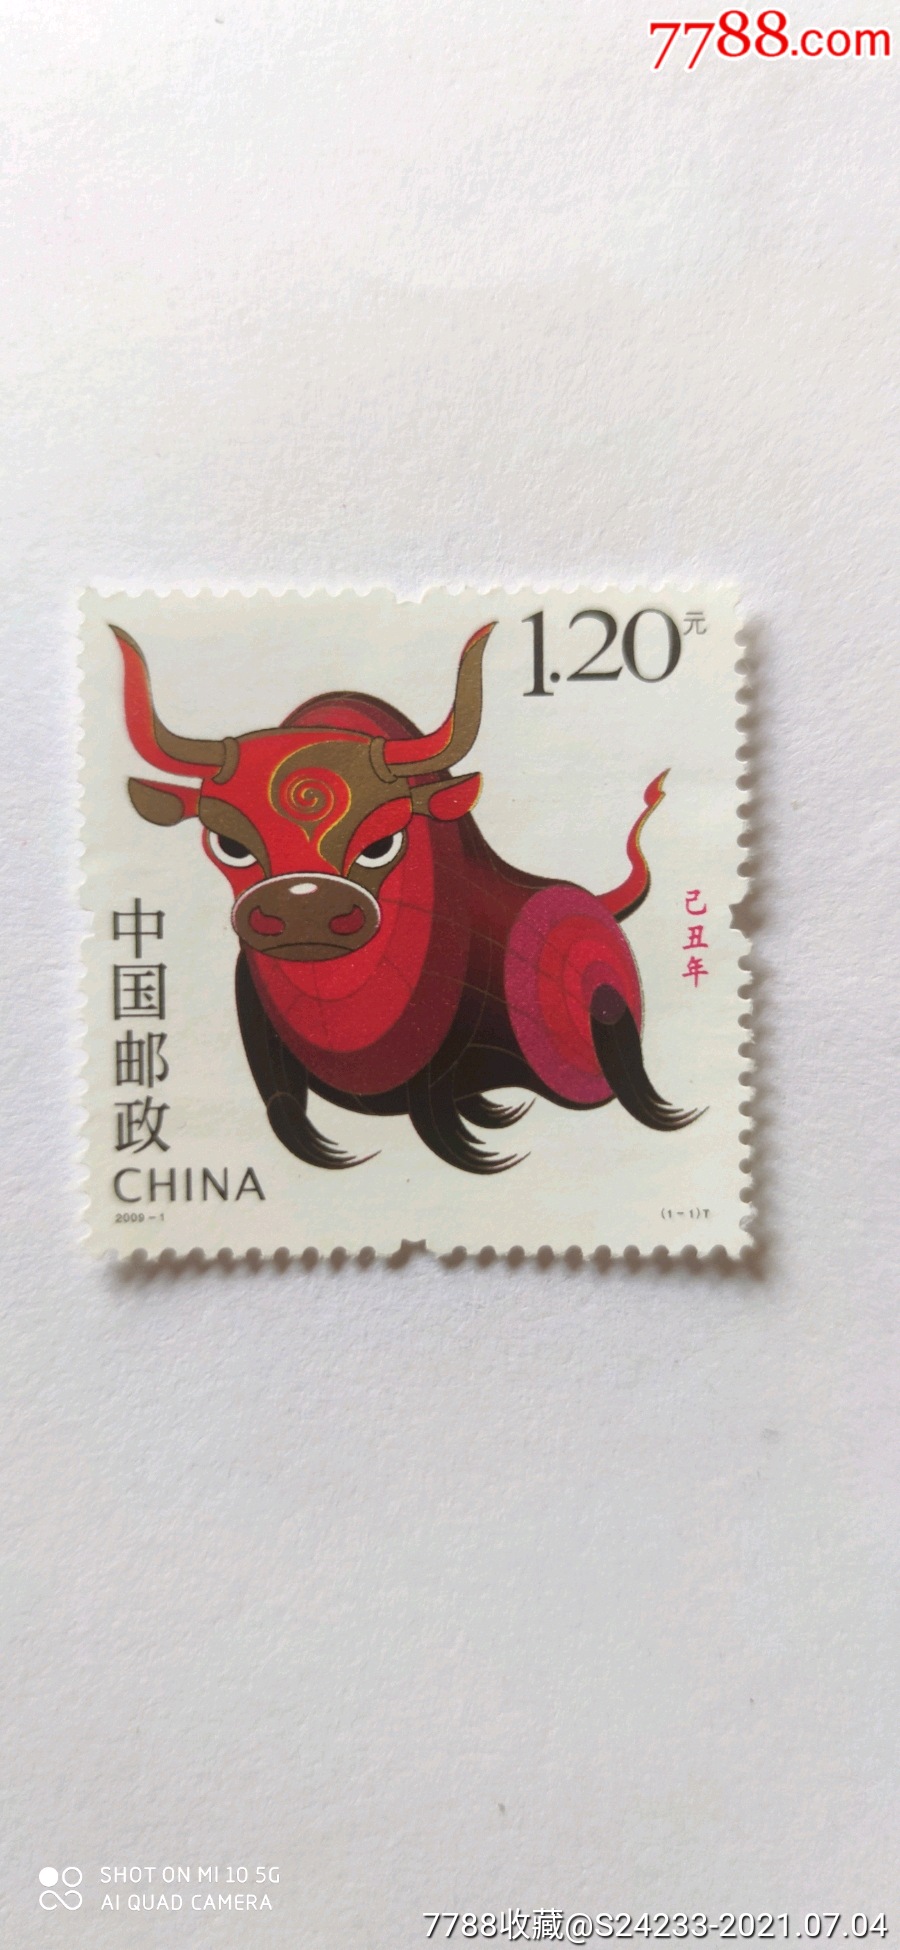 牛年邮票设计大赛图片